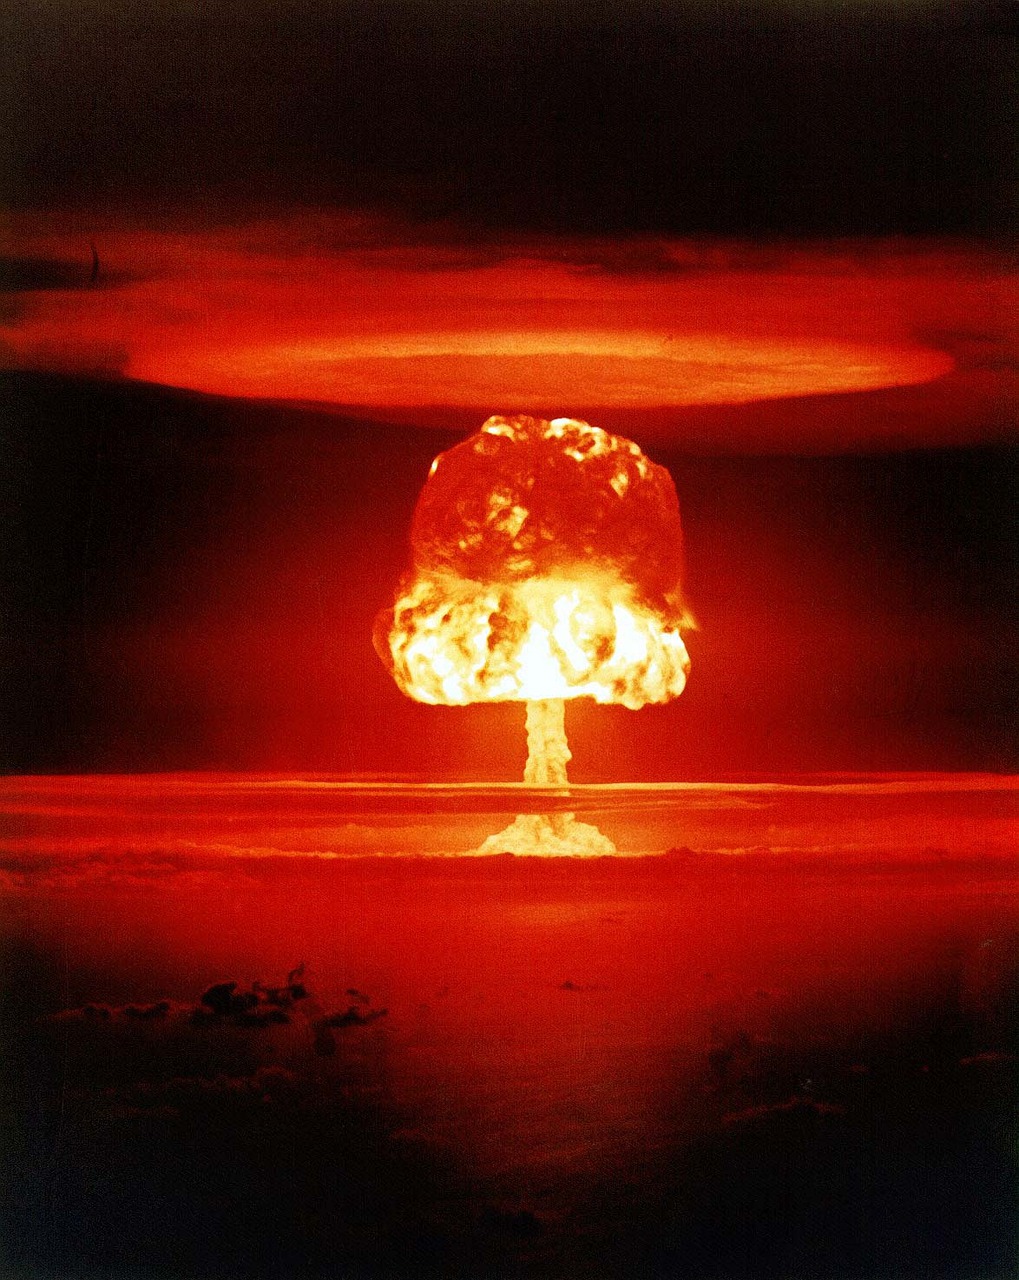 Bombe nucleaire Menace Nucleaire Vladimir Poutine Guerre Ukraine Menace Plare